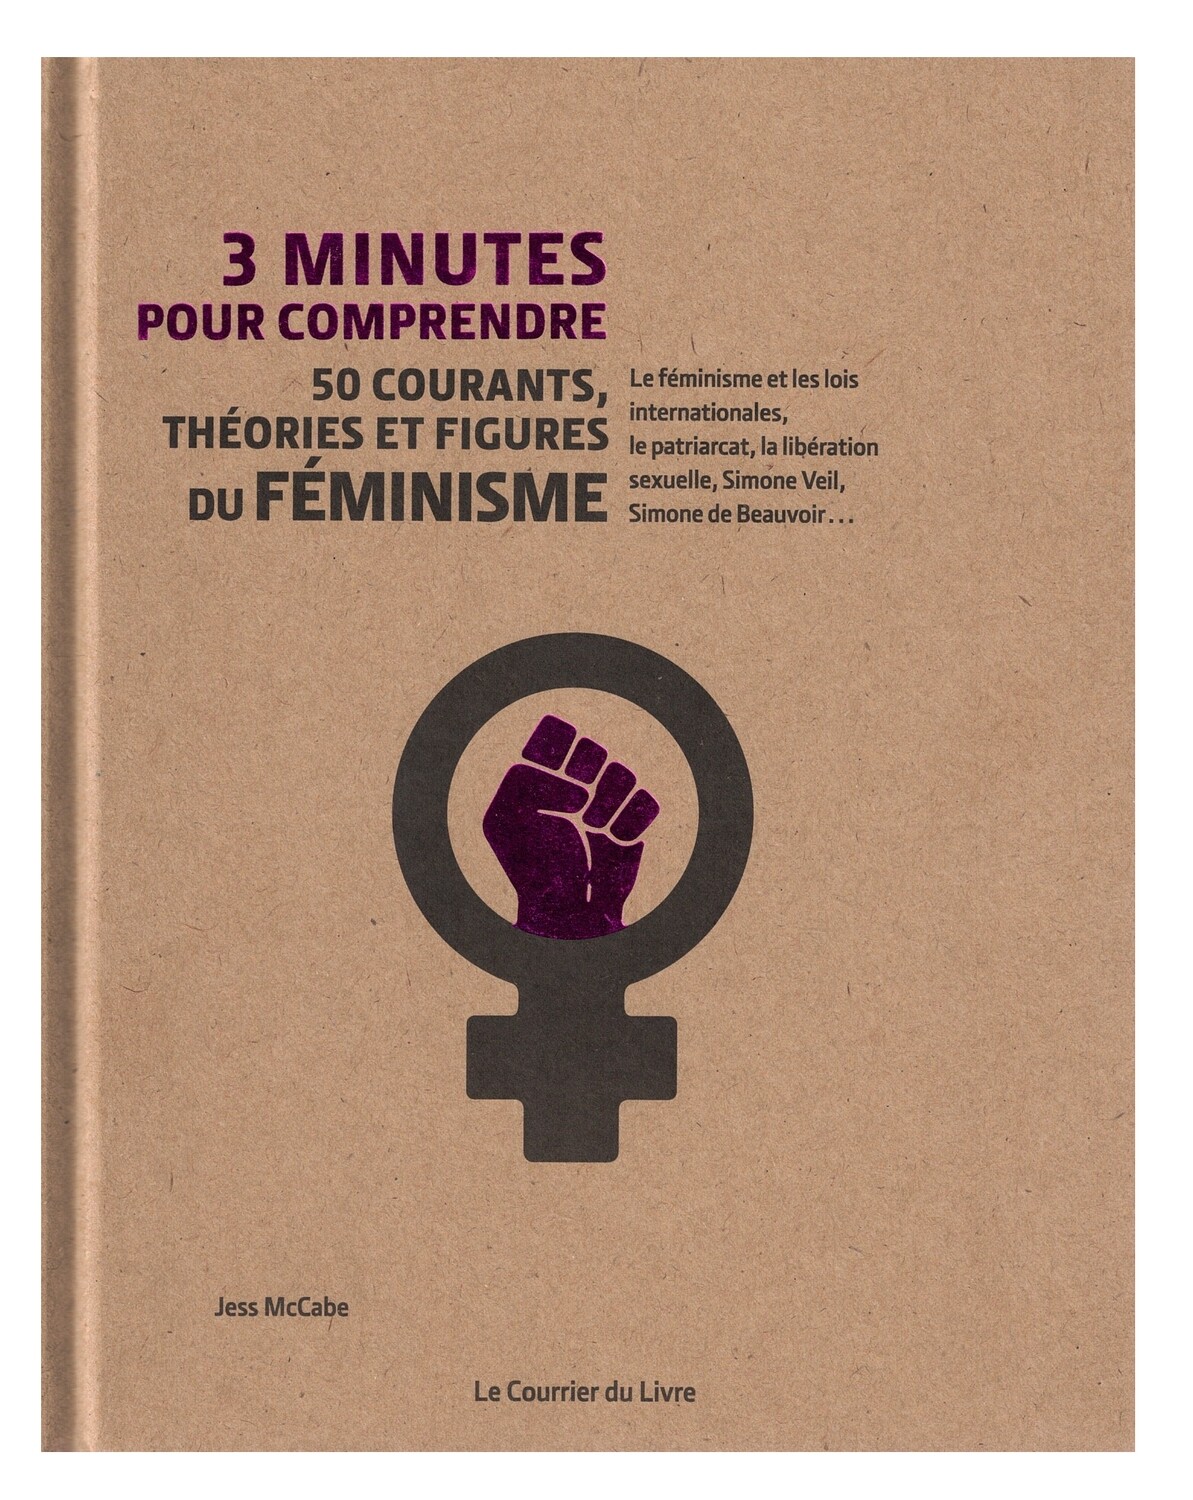 3 minutes pour comprendre 50 courants, theories et figures du feminisme